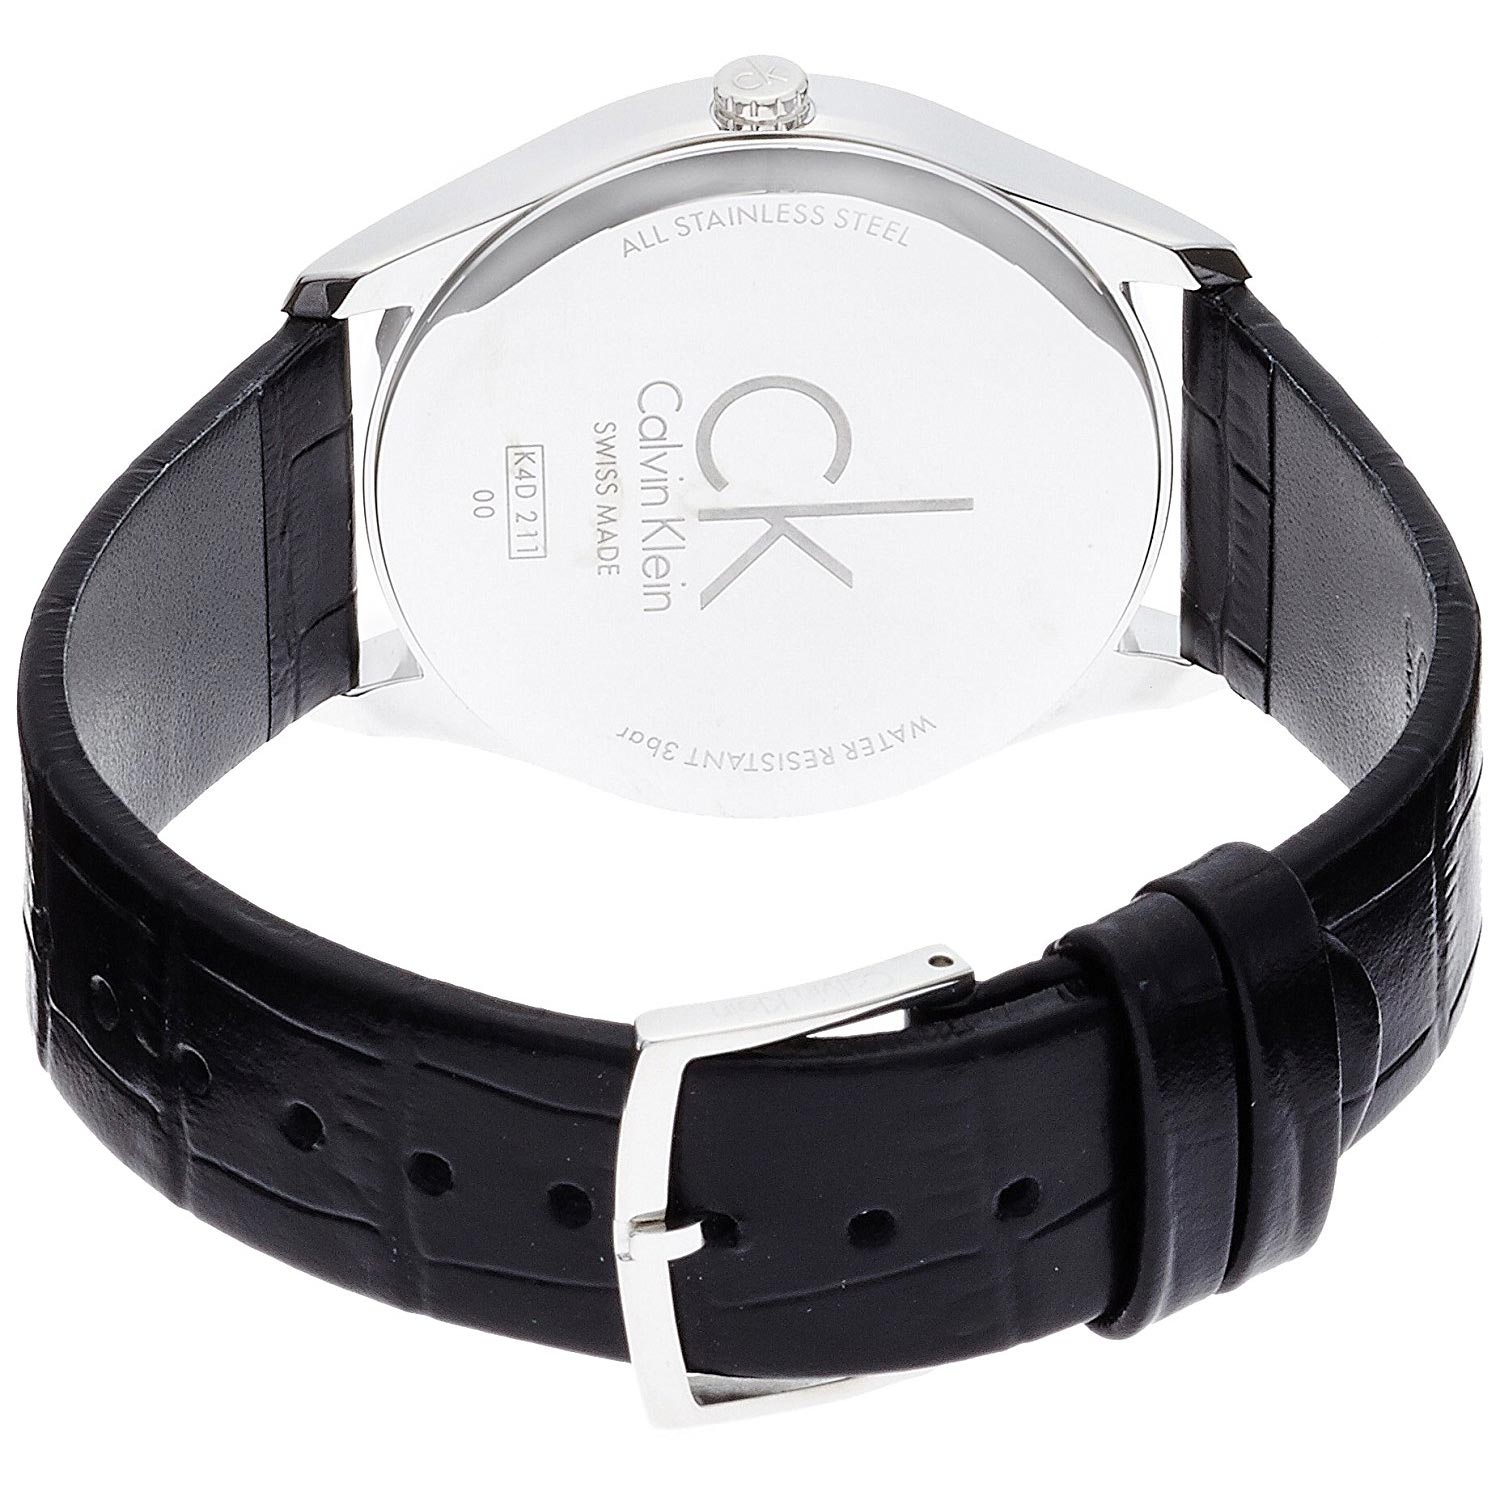 Calvin Klein Herren Digital Quarz Uhr mit Gummi Armband K5B23TD1 - 139.99 -  5.0 von 5 Sternen - Herren Uhren 2019